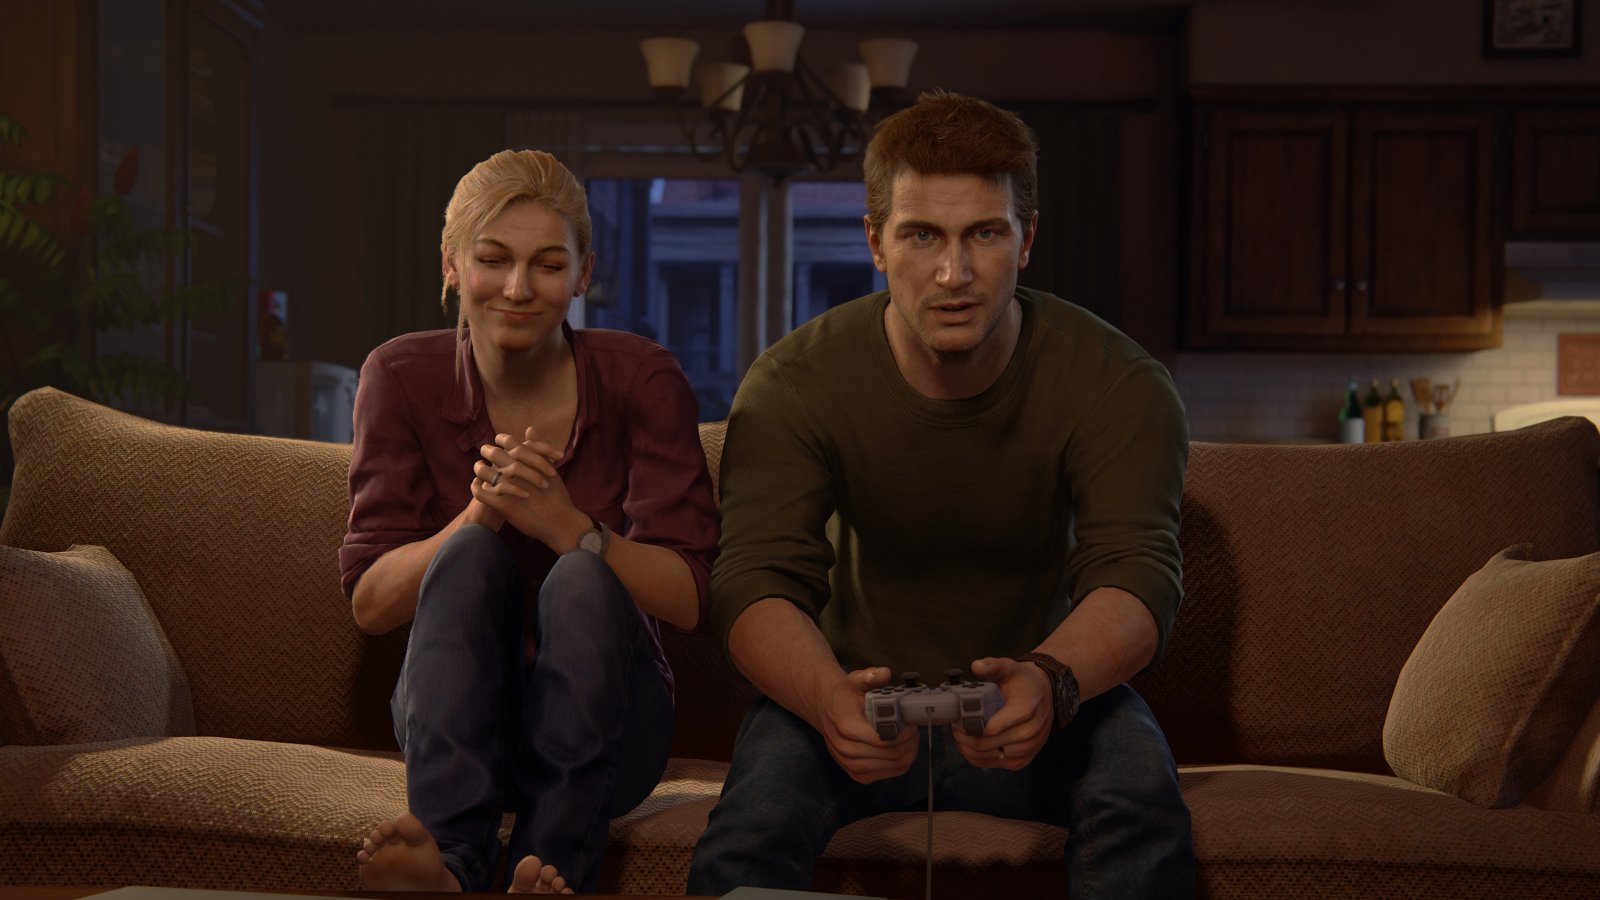 Uncharted 5 in sviluppo? C'è un indizio nel nuovo spot di PS5, stando a una teoria